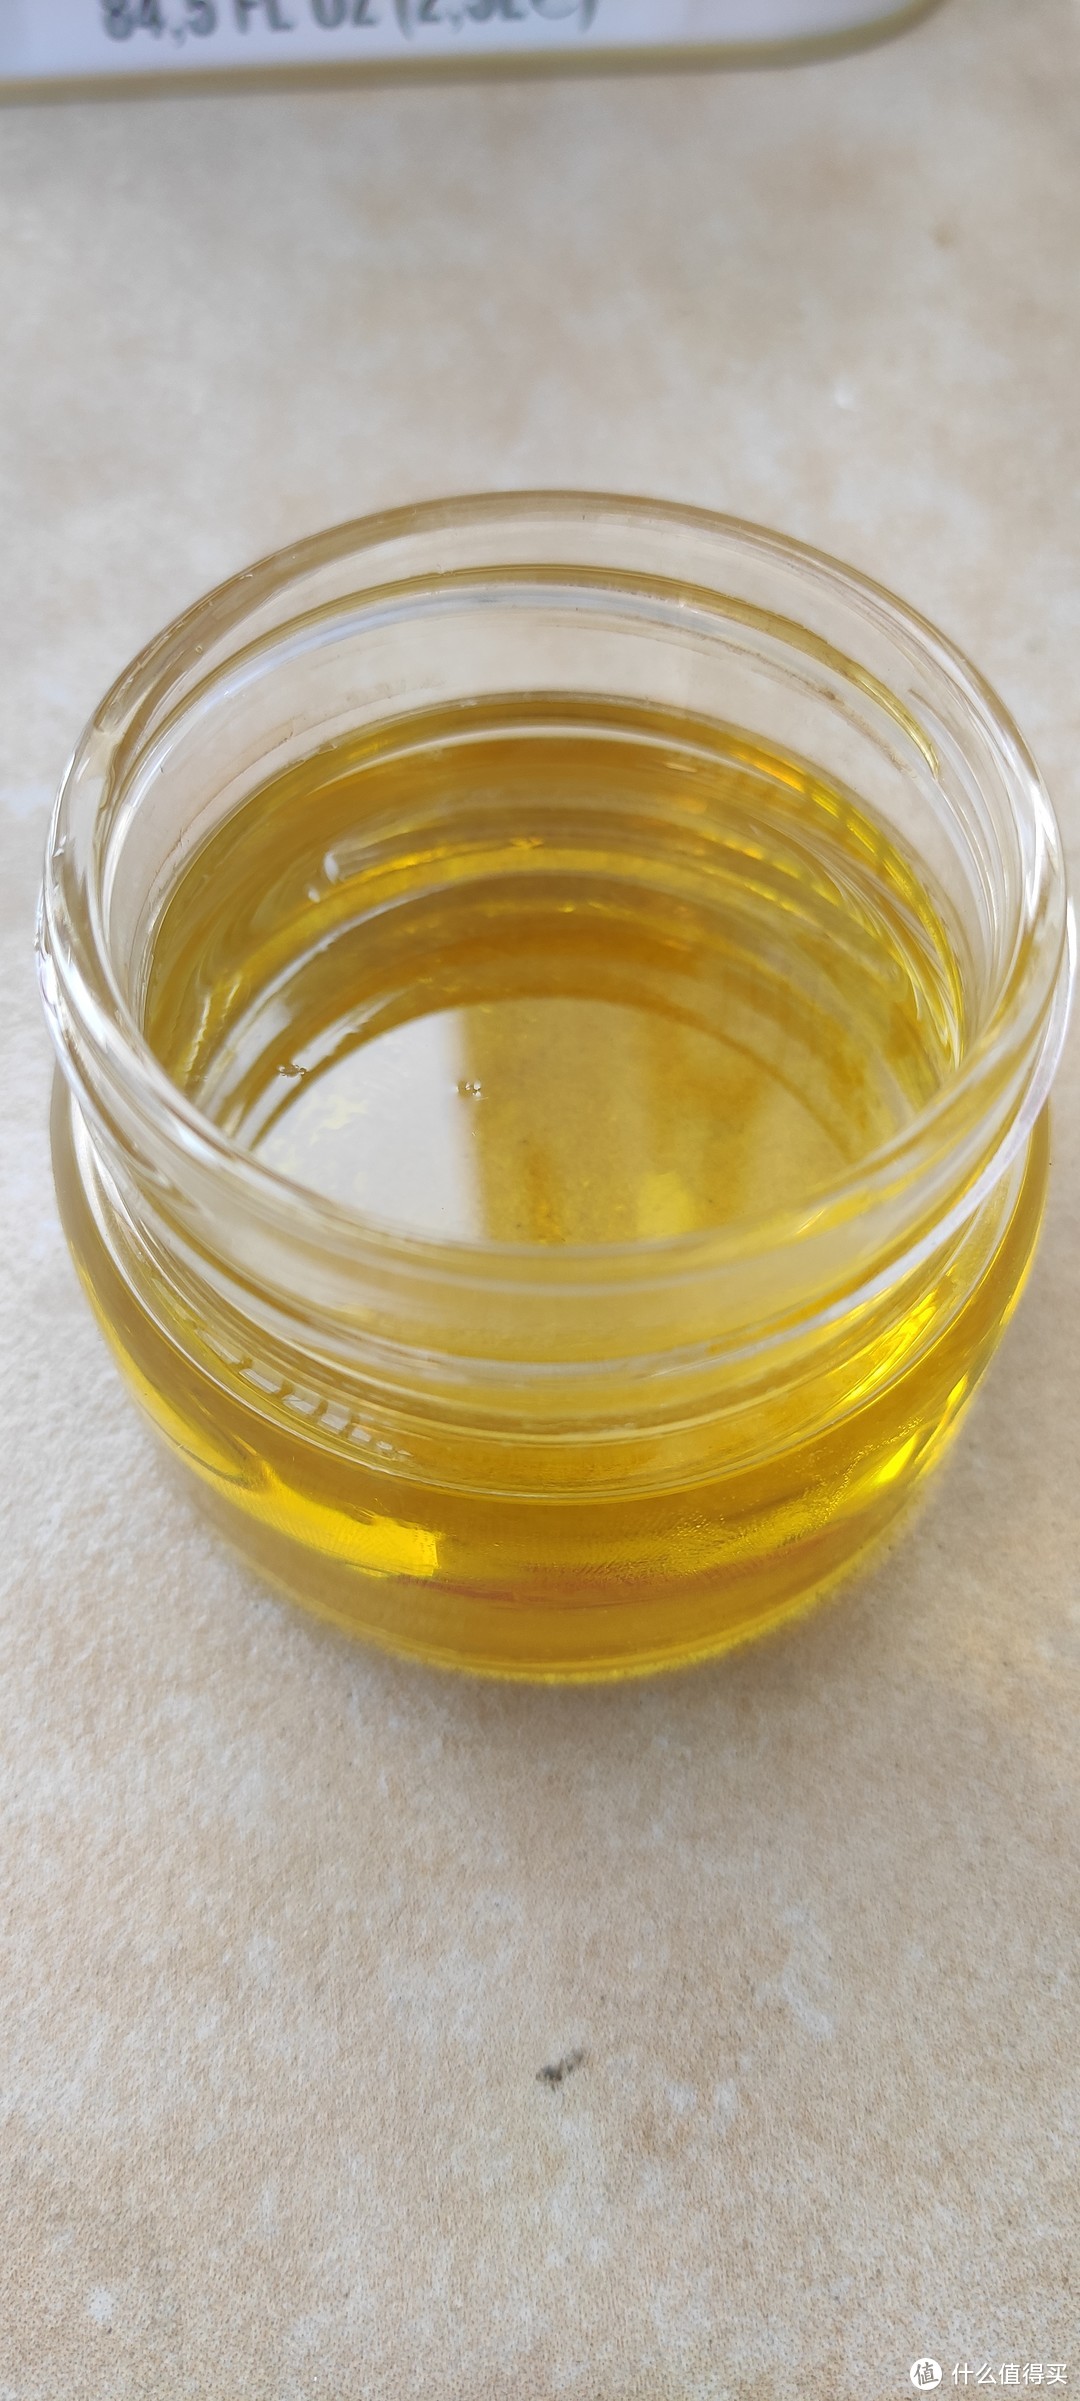 最健康，最适合人体的食用油是什么？当然是橄榄油啦！特级初榨橄榄油好不好？